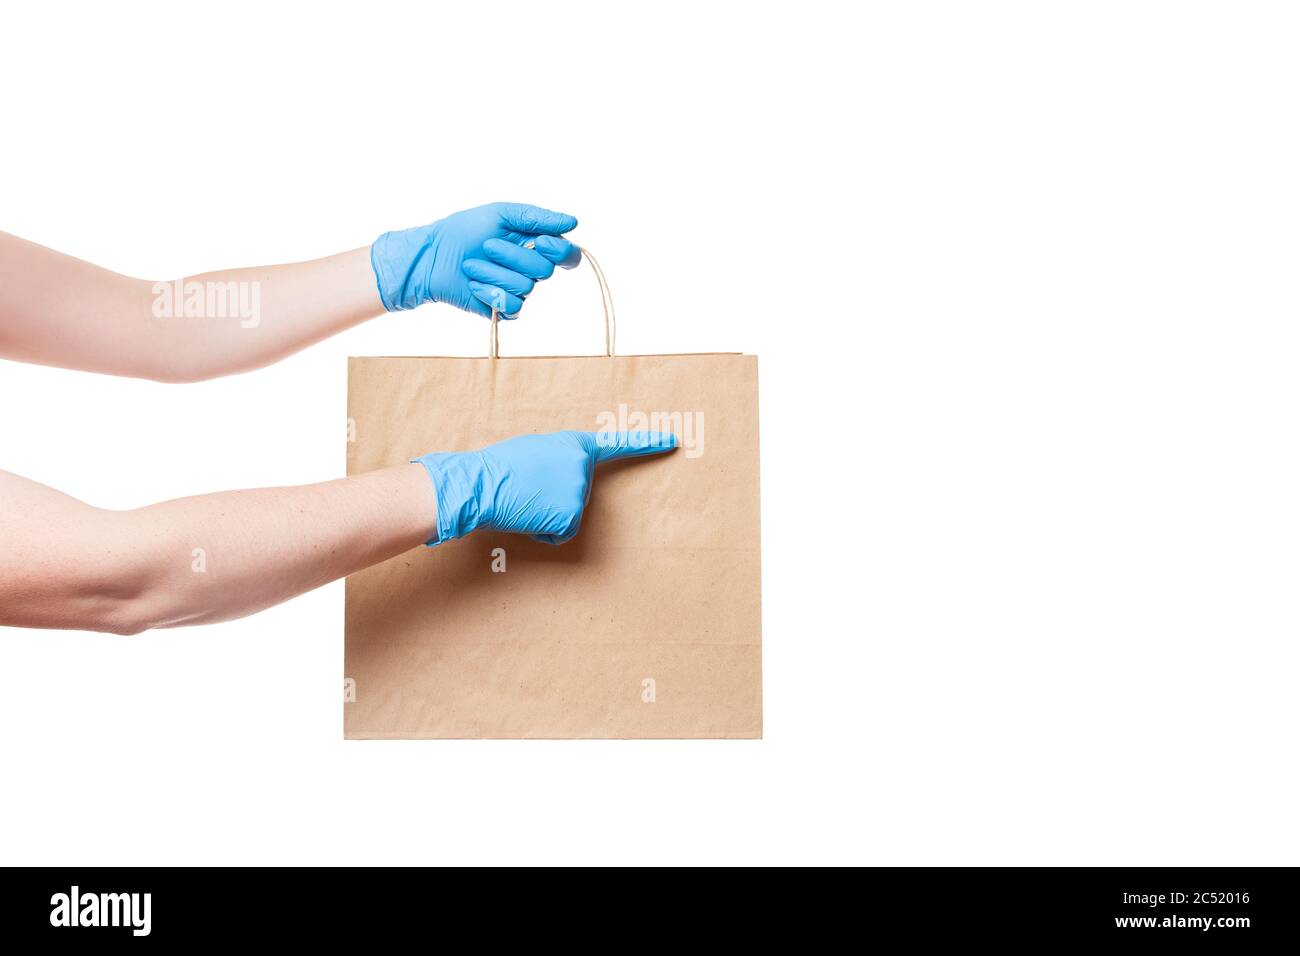 mains dans des gants stériles de messagerie pour la livraison sûre de nourriture dans l'emballage écologique de l'artisanat pointe un doigt à un endroit vide pour le logo, maquette iso Banque D'Images